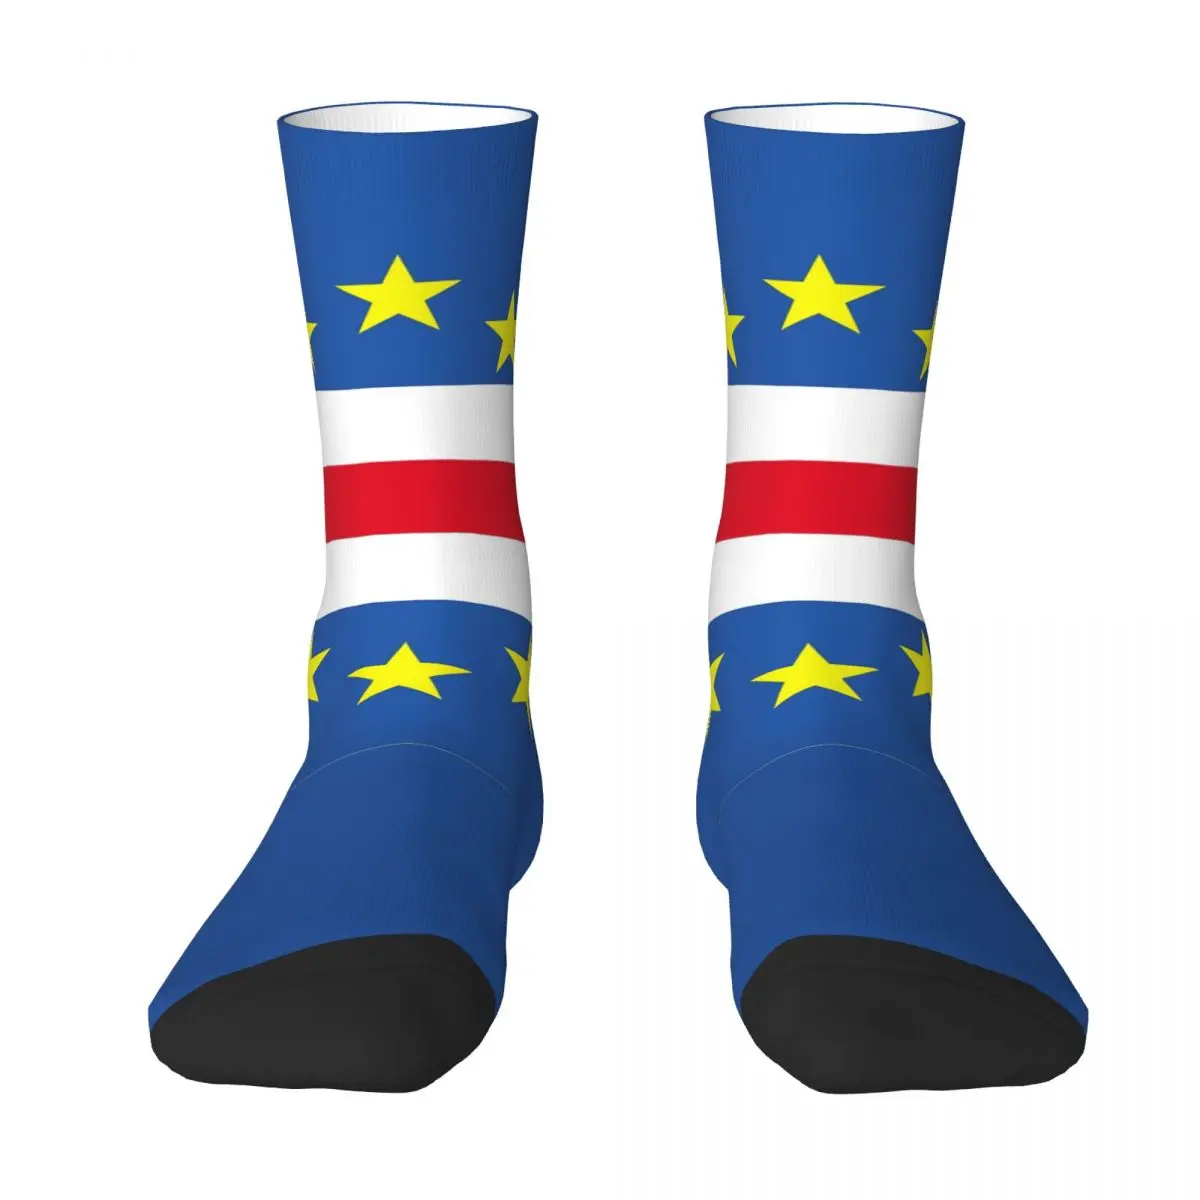 

CAPE VERDE (FLAG) Contrast color socks Infantry pack Compression Socks Humor Graphic Novelty R333 Stocking